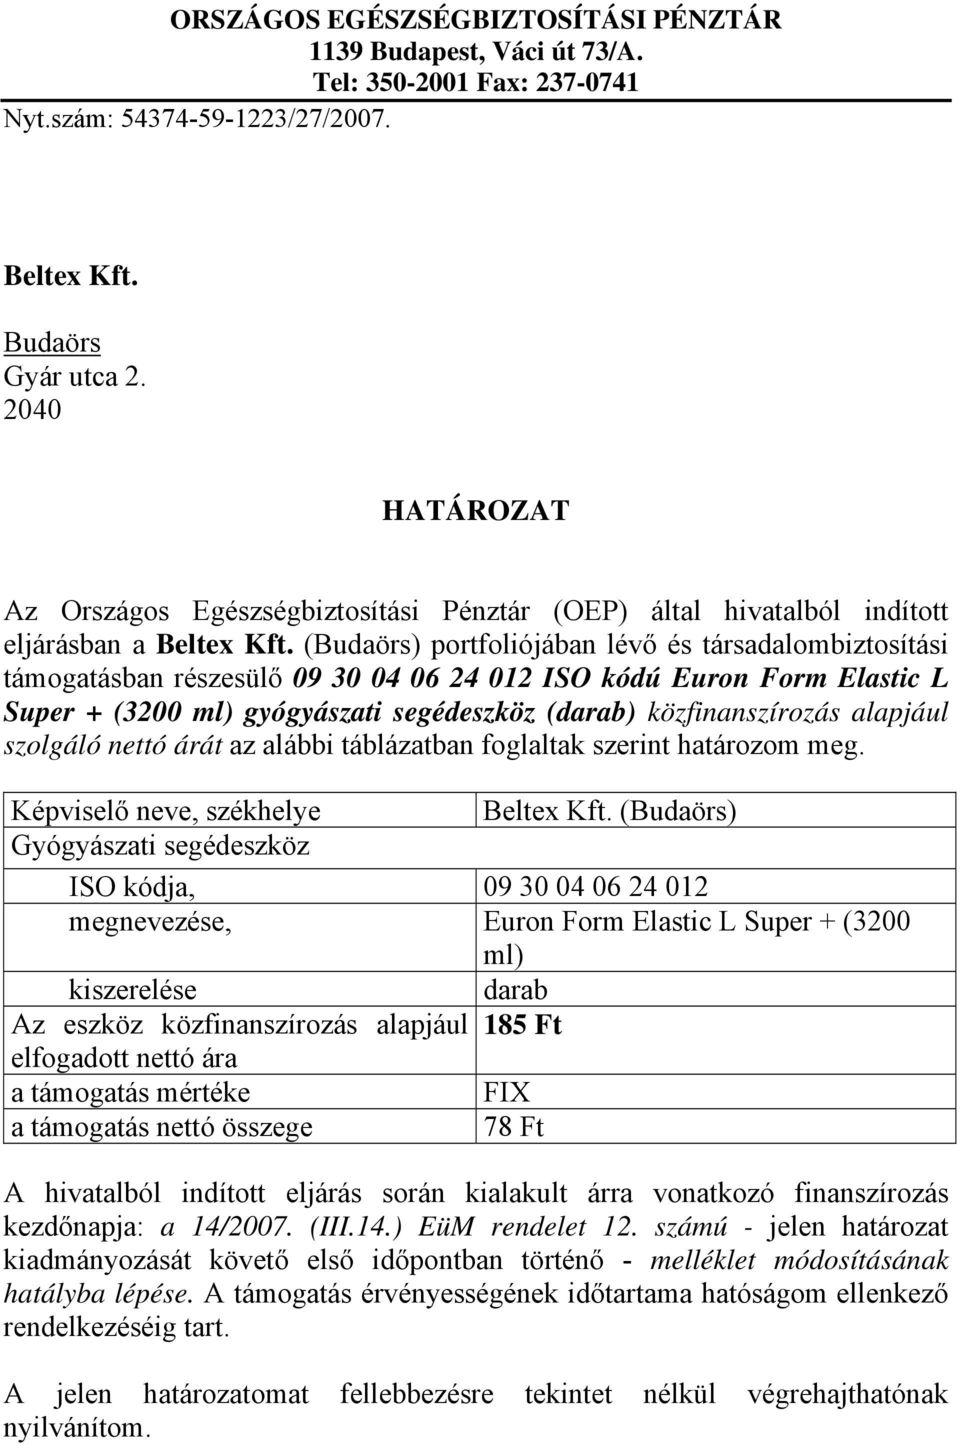 (Budaörs) portfoliójában lévő és társadalombiztosítási támogatásban részesülő 09 30 04 06 24 012 ISO kódú Euron Form Elastic L Super + (3200 ml) gyógyászati segédeszköz (darab) közfinanszírozás